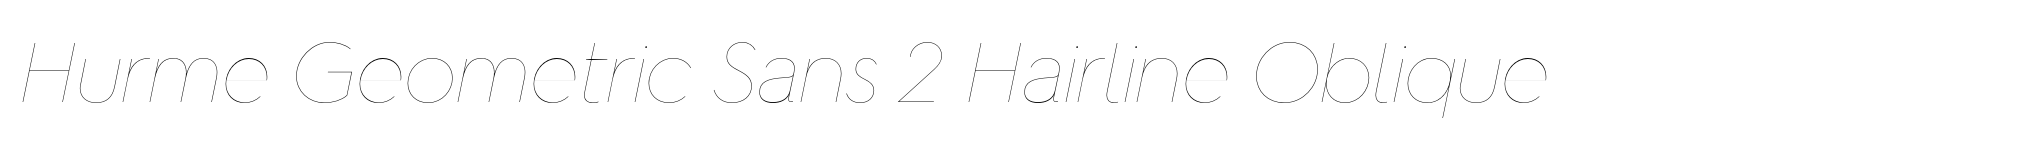 Hurme Geometric Sans 2 Hairline Oblique image